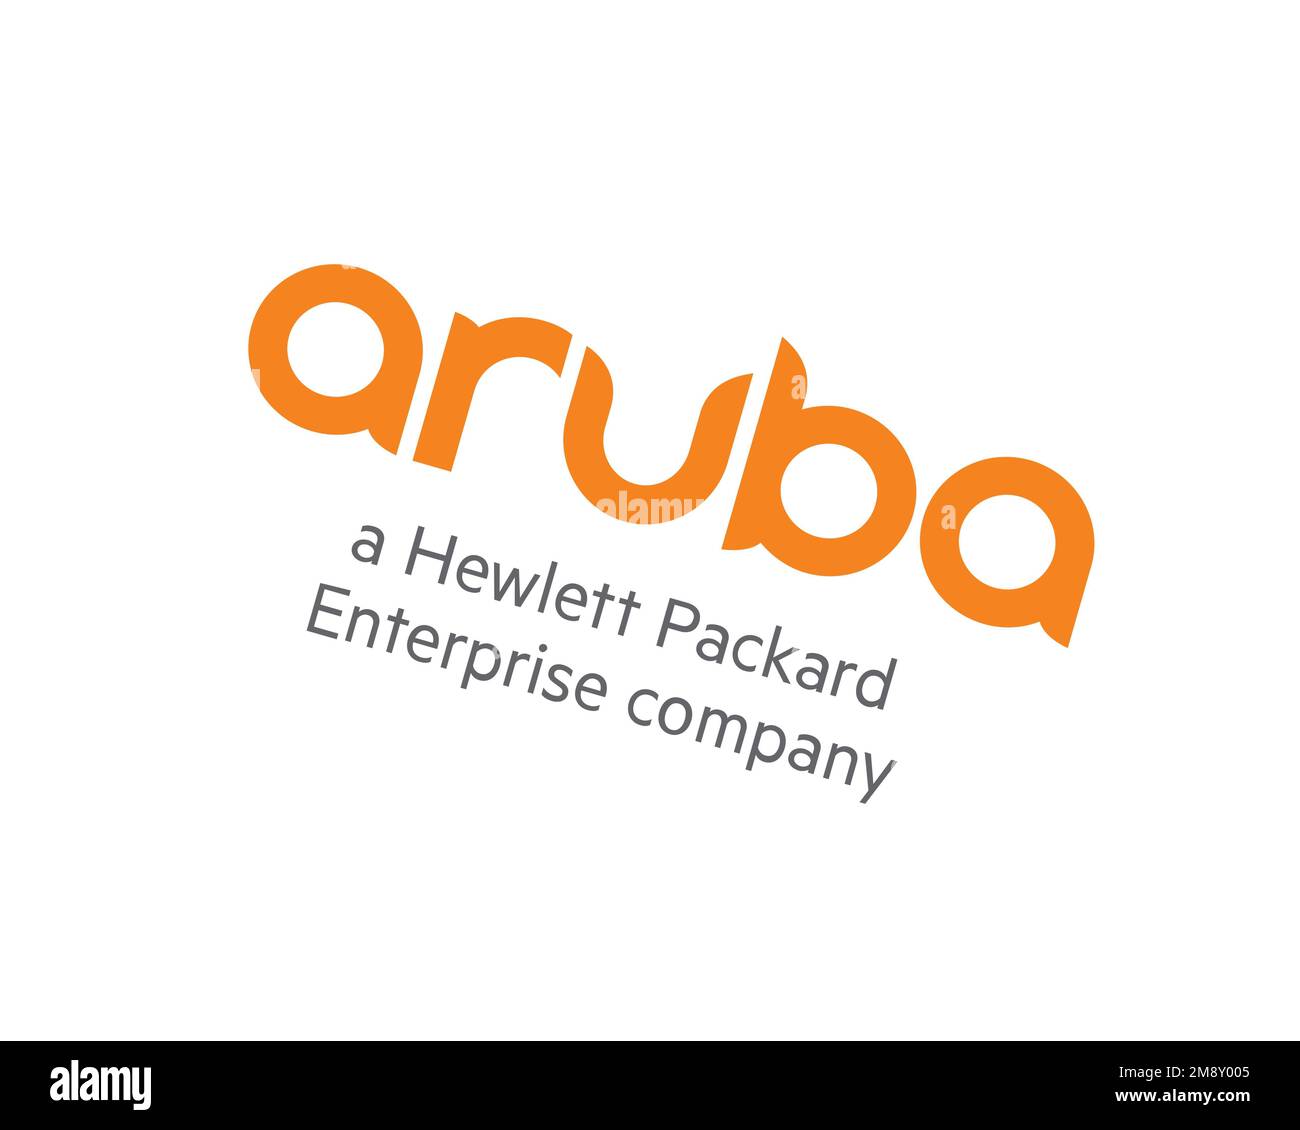 Aruba Networks, logo pivoté, fond blanc B Banque D'Images